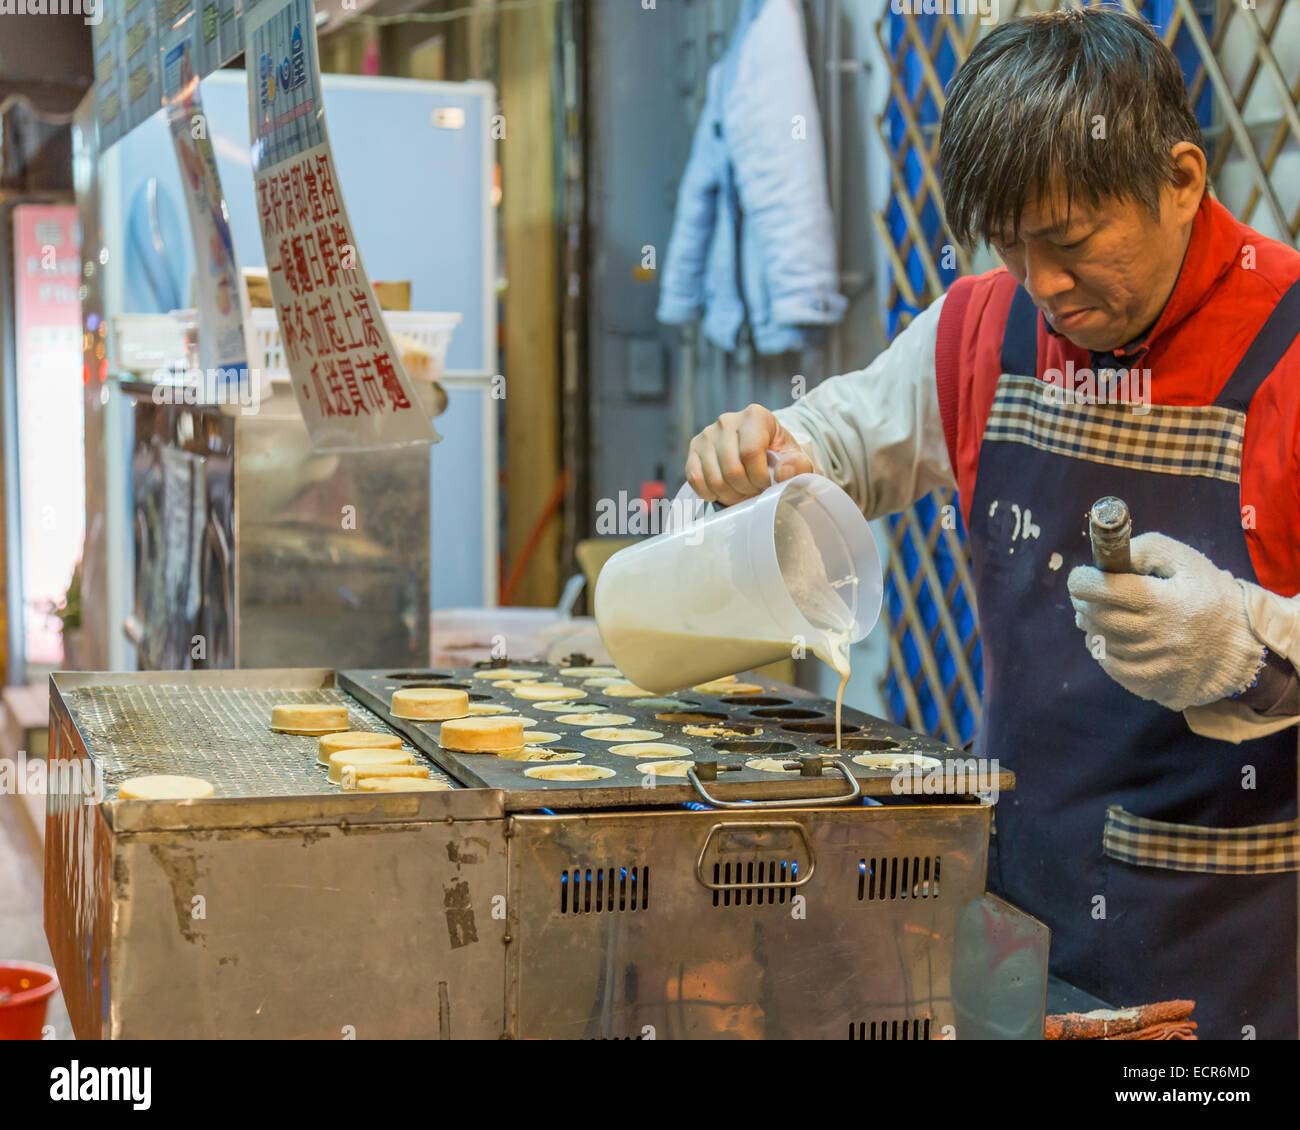 TAIPEI CITY, TAIPEI, TAIWAN. DECEMBER 17, 2014.  Vendor making cartwheel pies at Shida night market Stock Photo